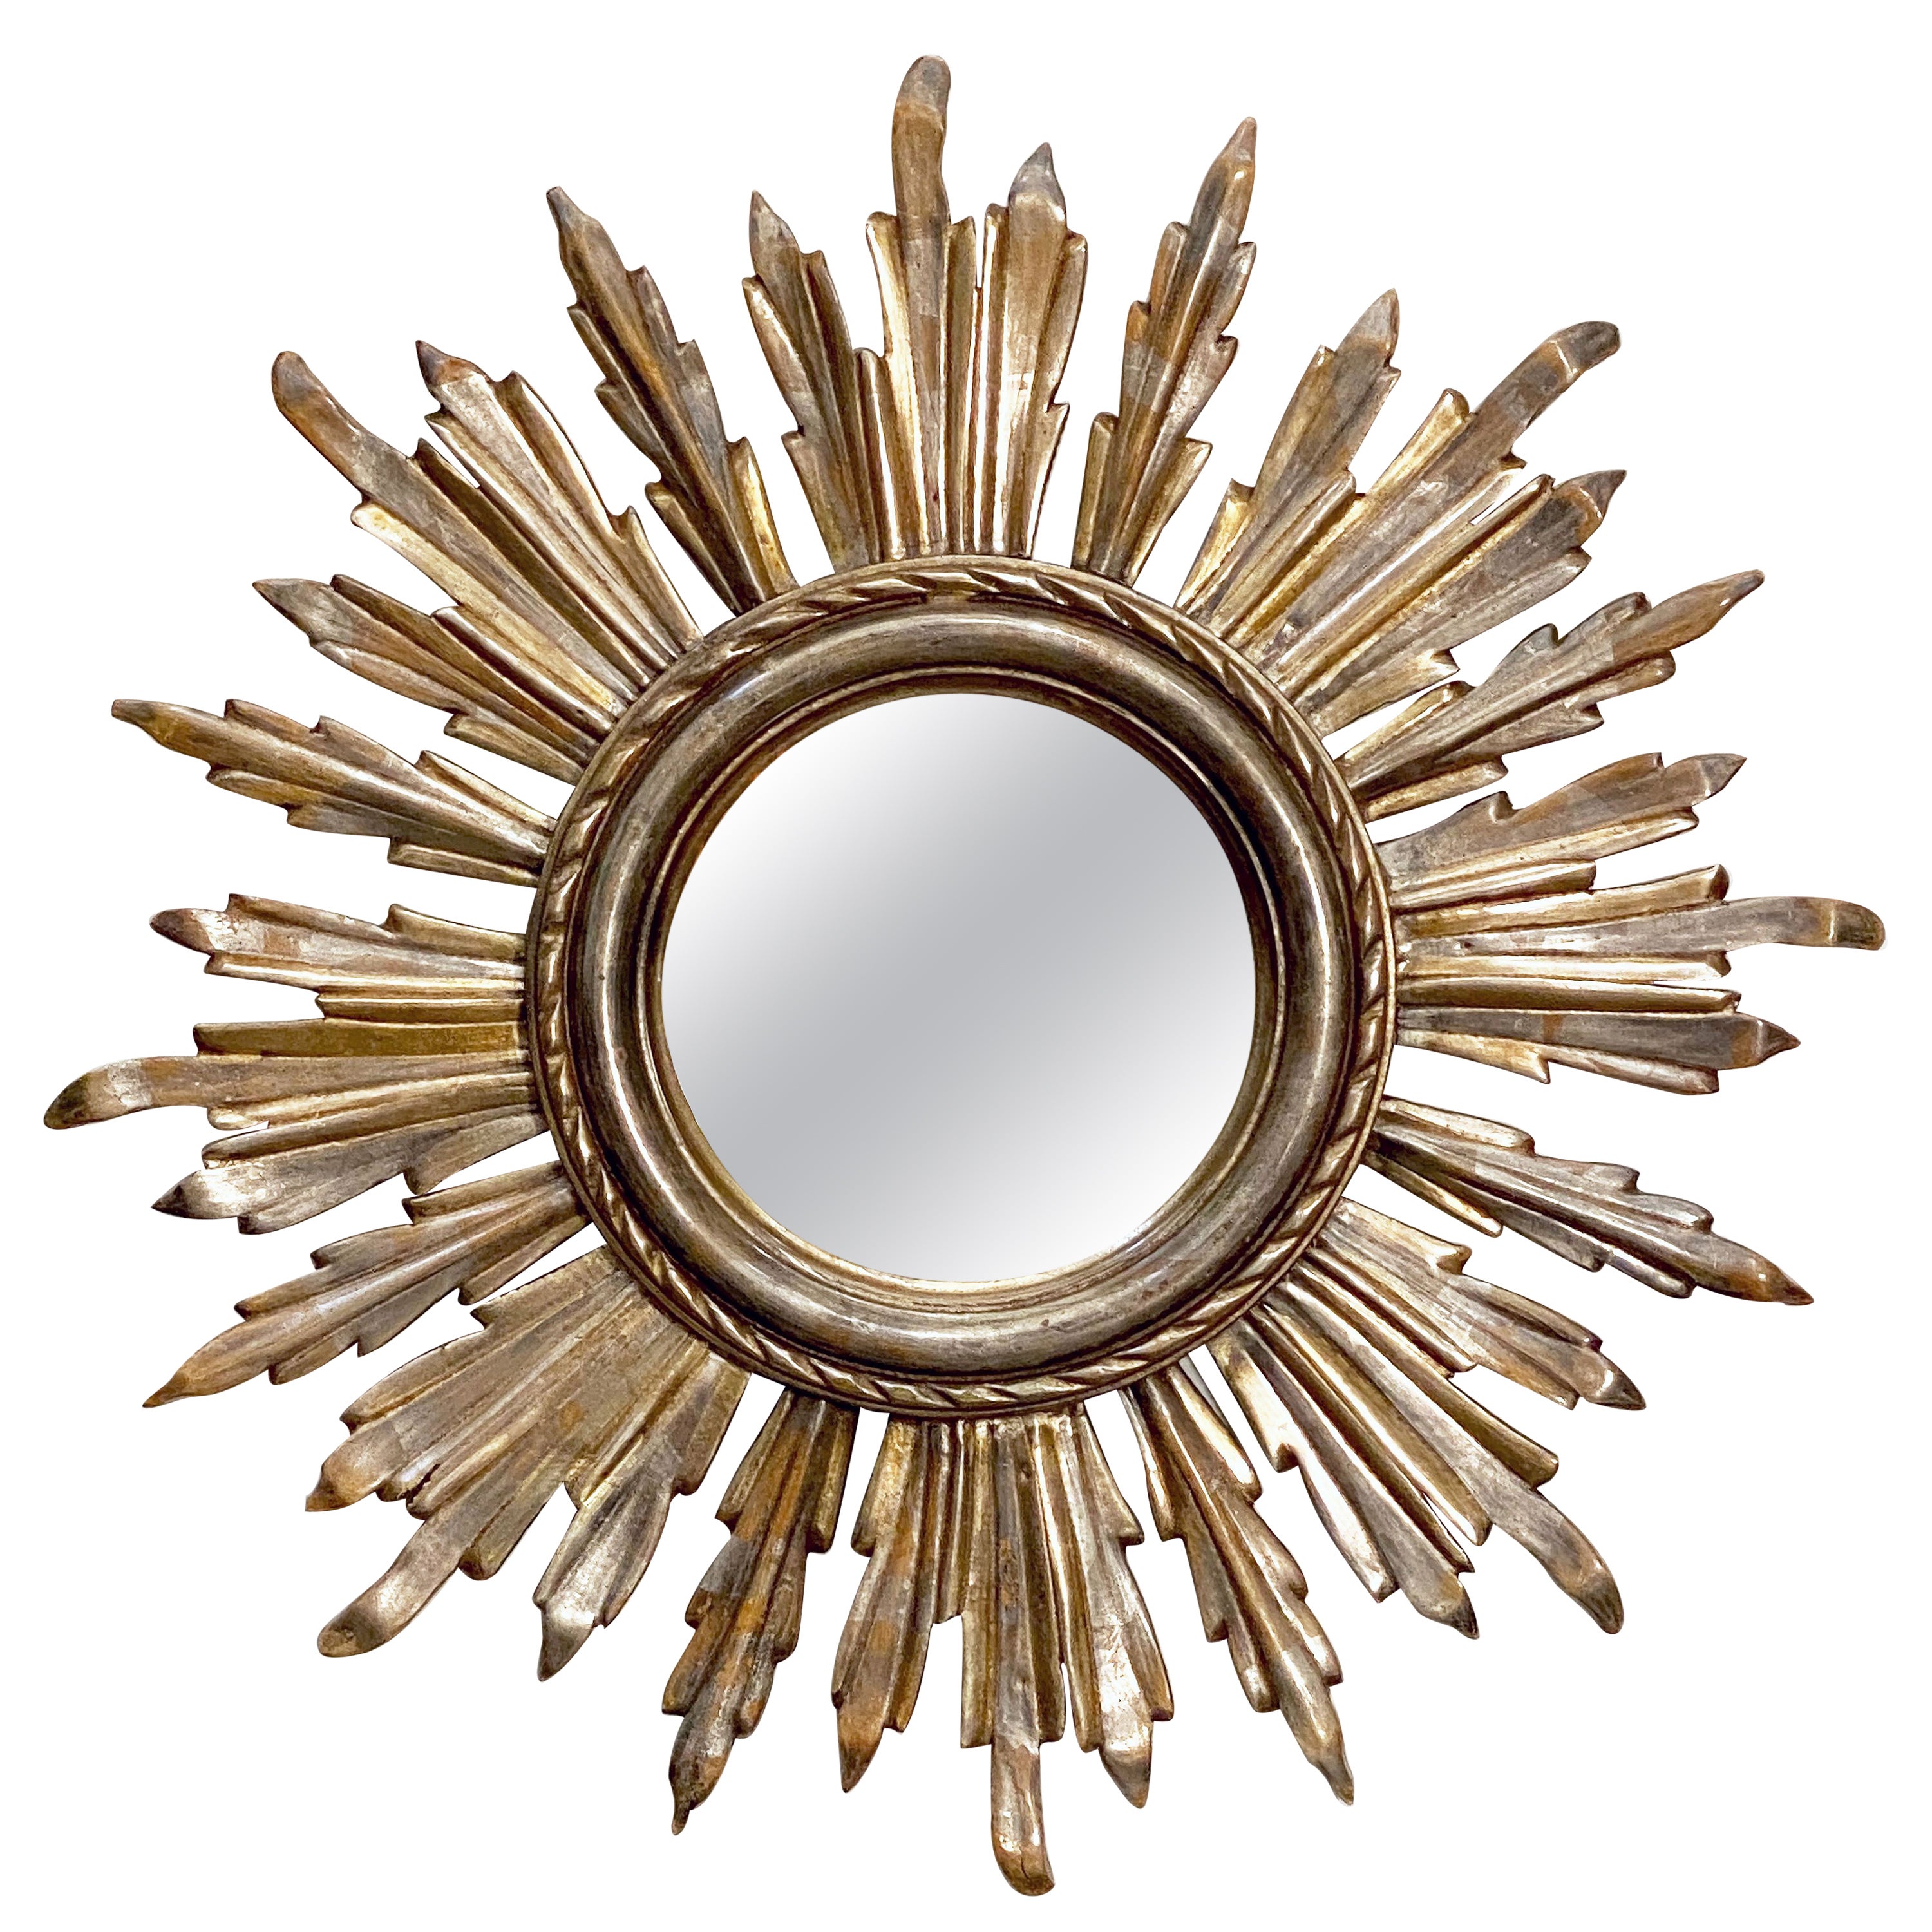 Miroir français en forme d'étoile de soleil ou d'étoile en or et argent doré (diamètre 21)